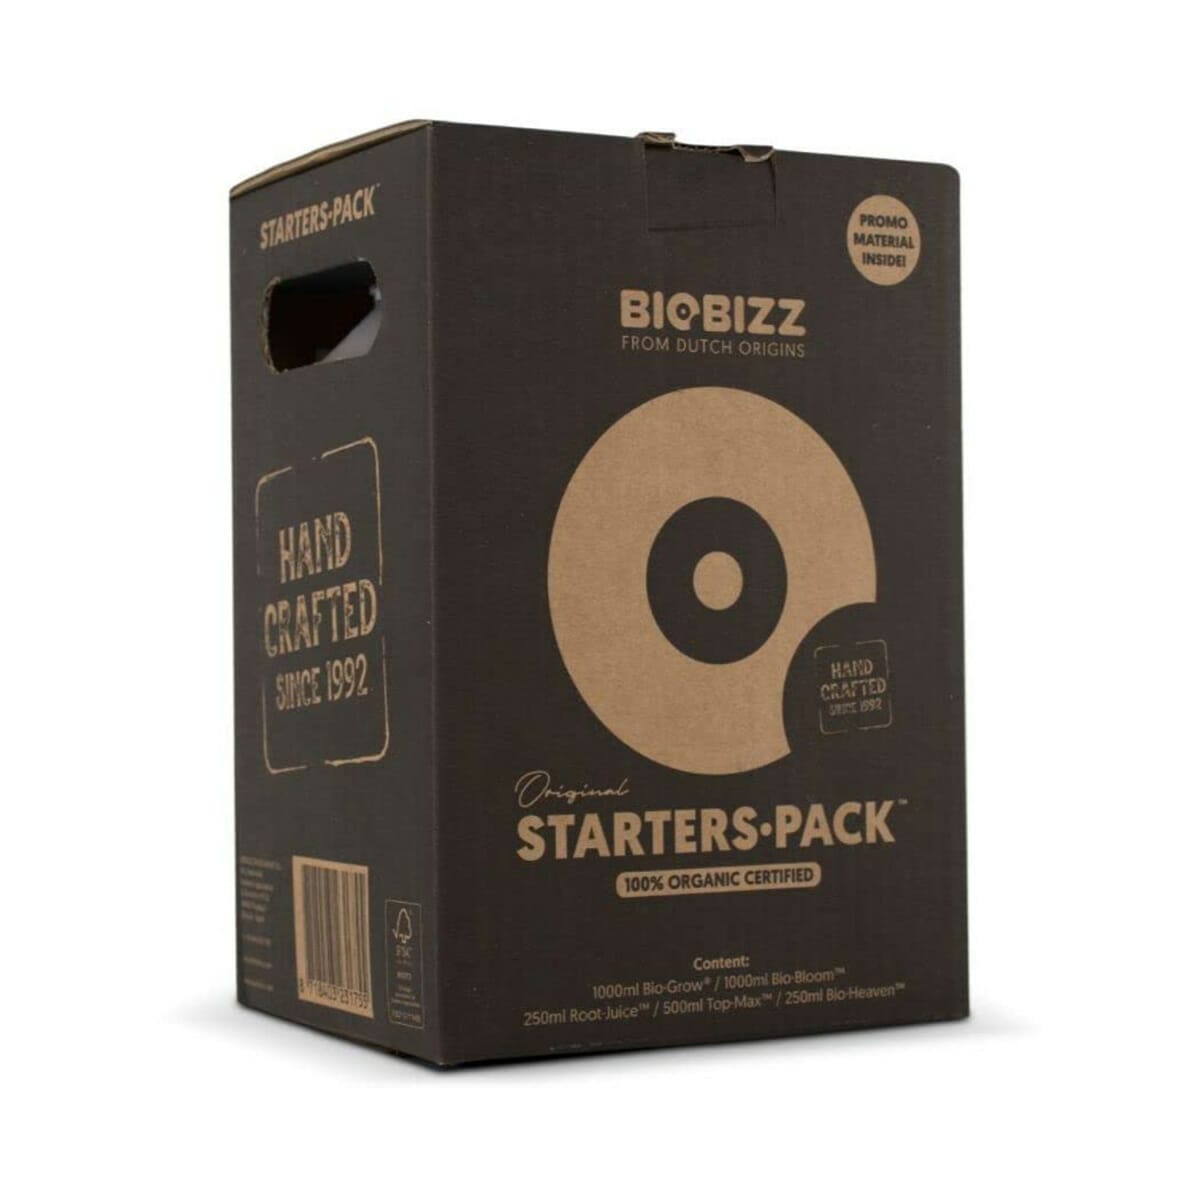 Biobizz Starter Pack Packaging